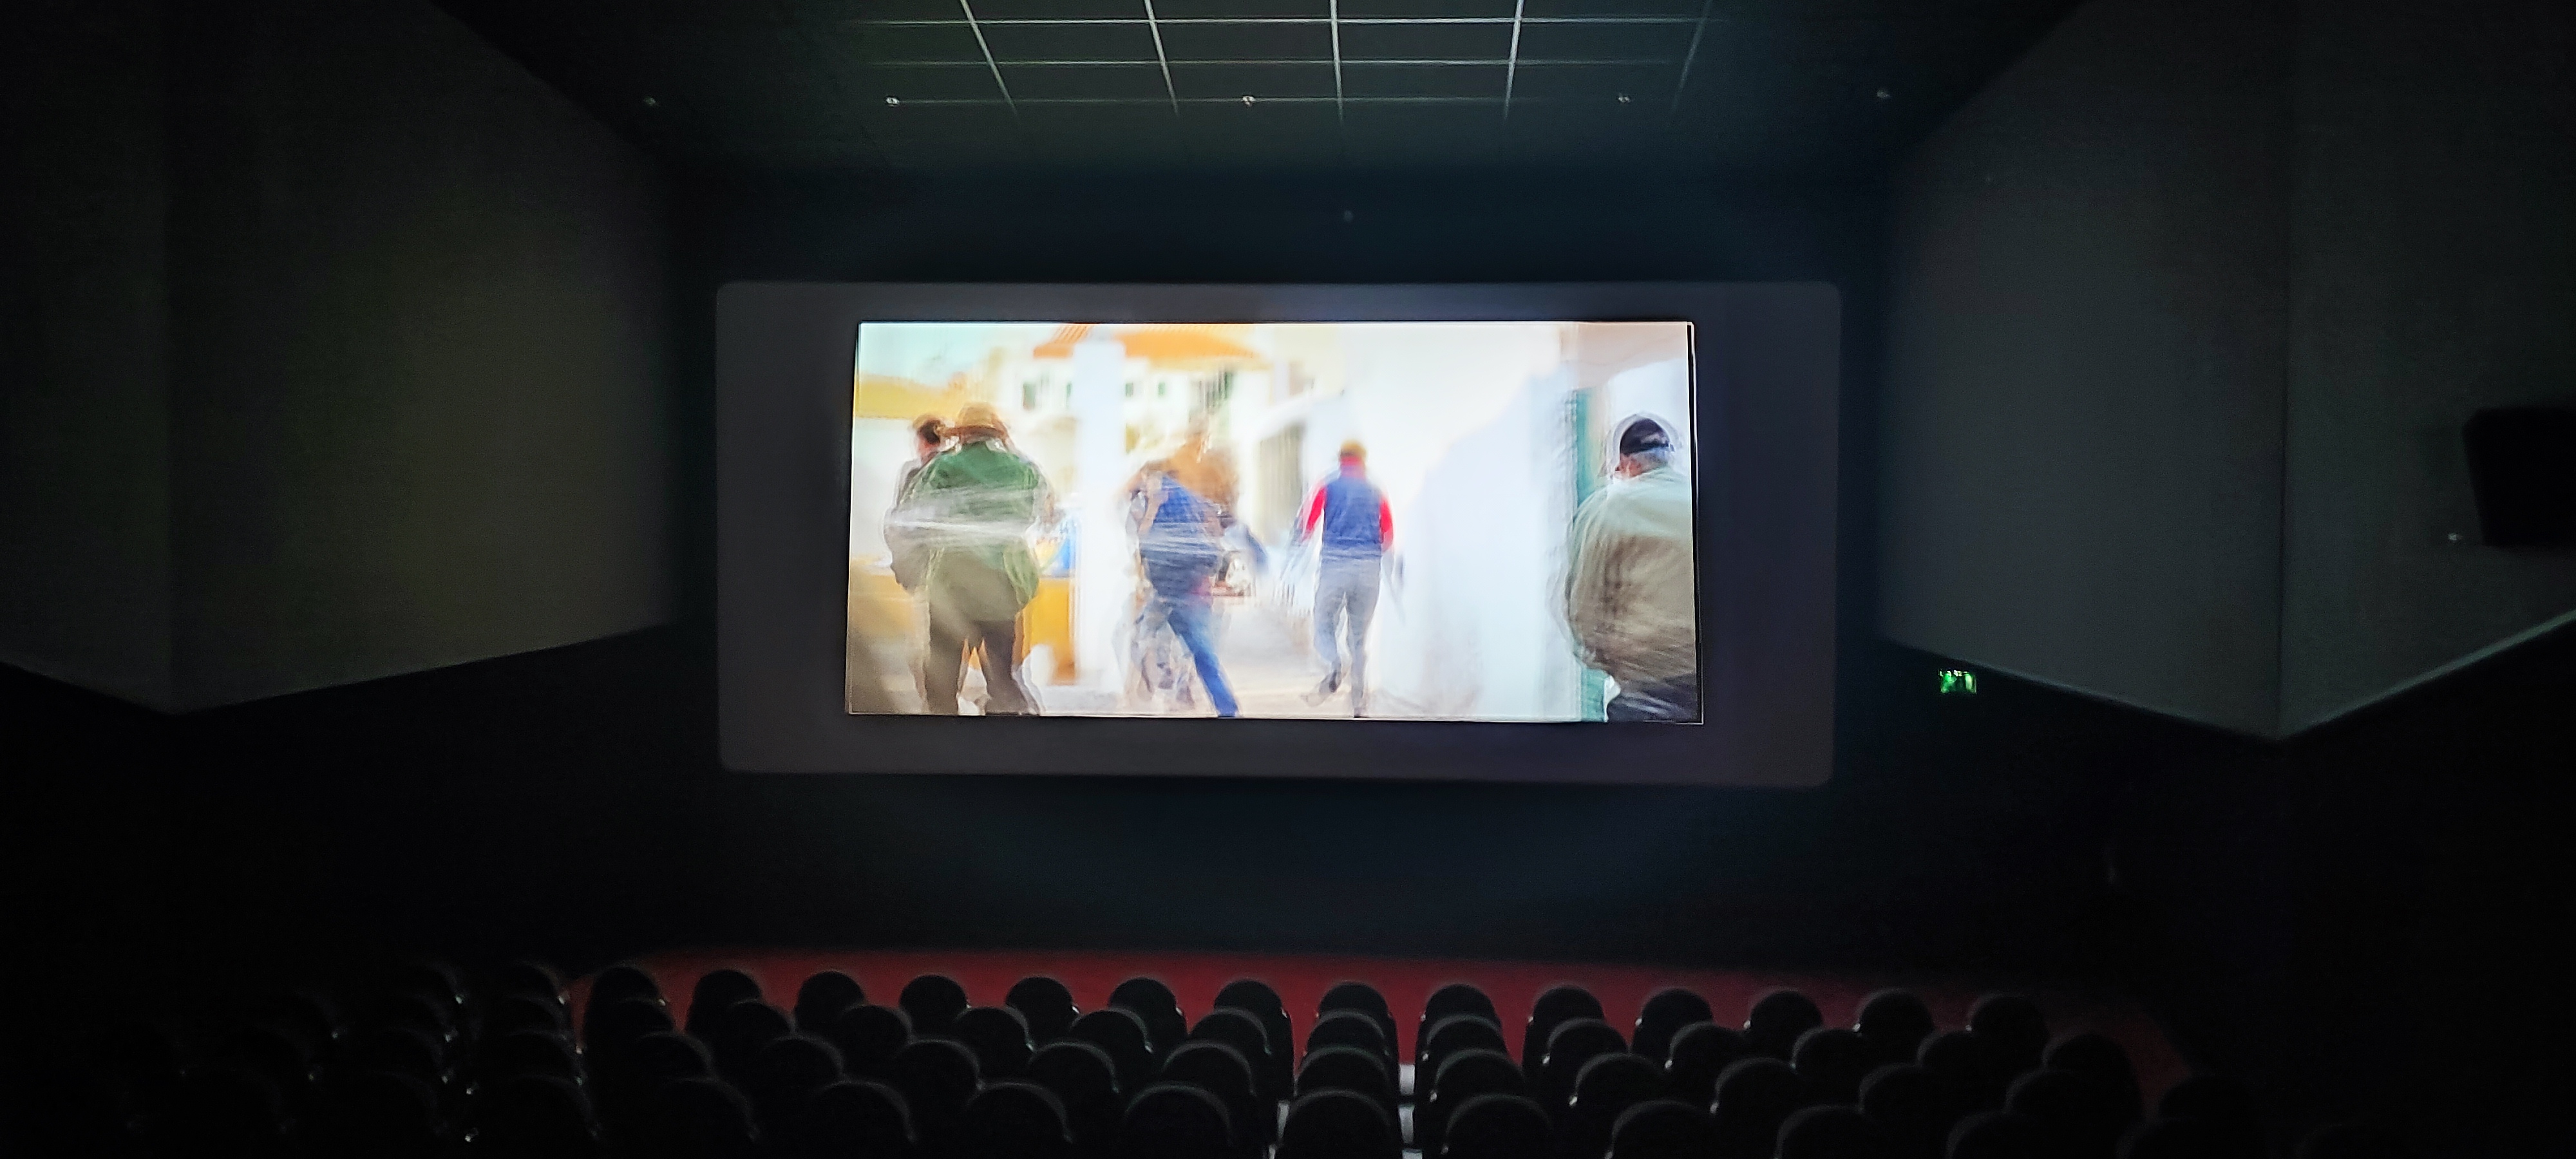 Cineplace - Um autêntico atentado à cultura e uma fraca qualidade prestada aos clientes de Leiria